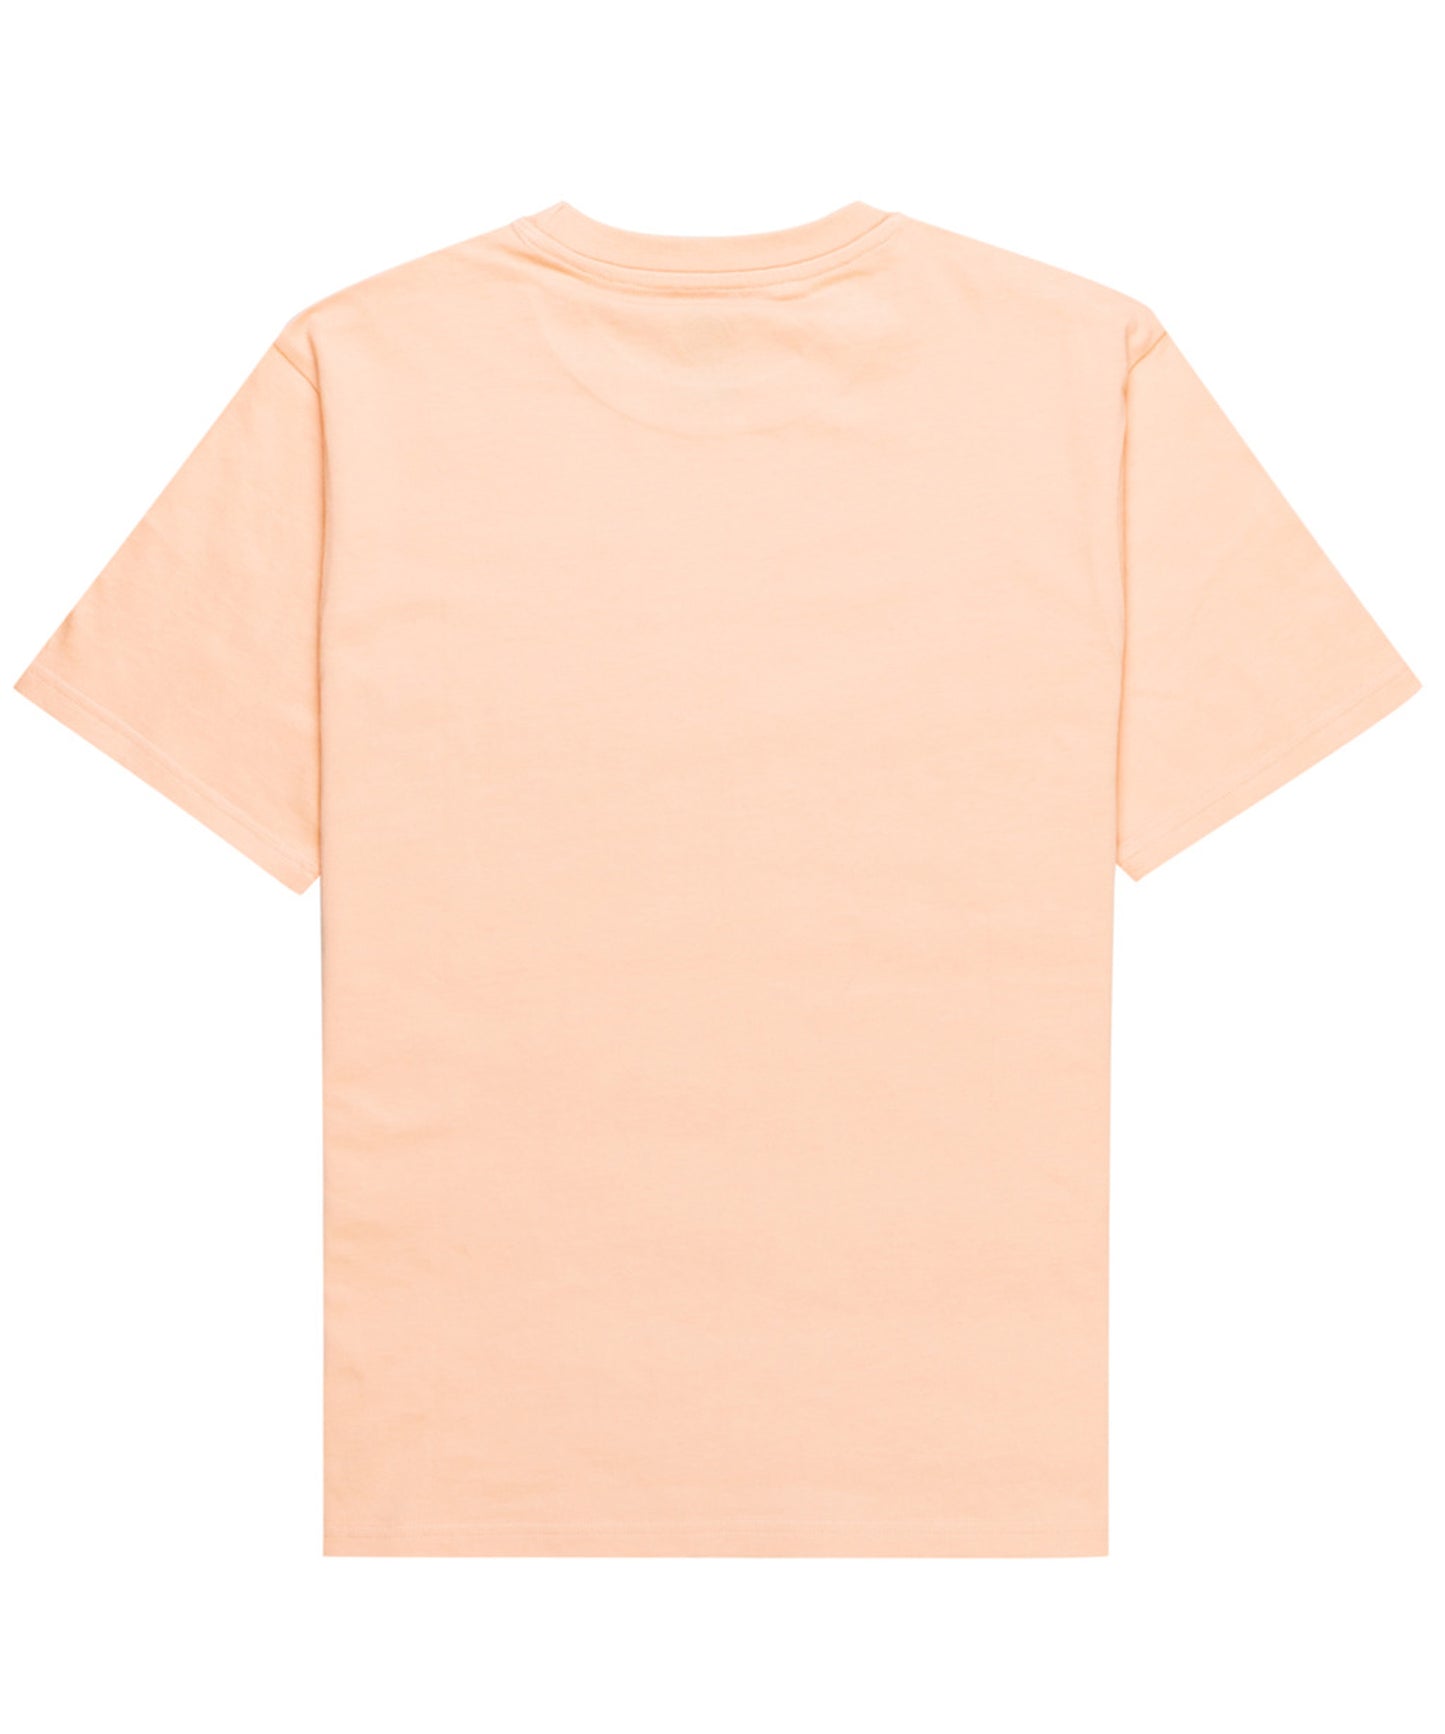 element-camiseta-hombre-blazin-chest-color-albaricoque-pequeño-logo-element-en-el-pecho-100%-algodón-orgánico